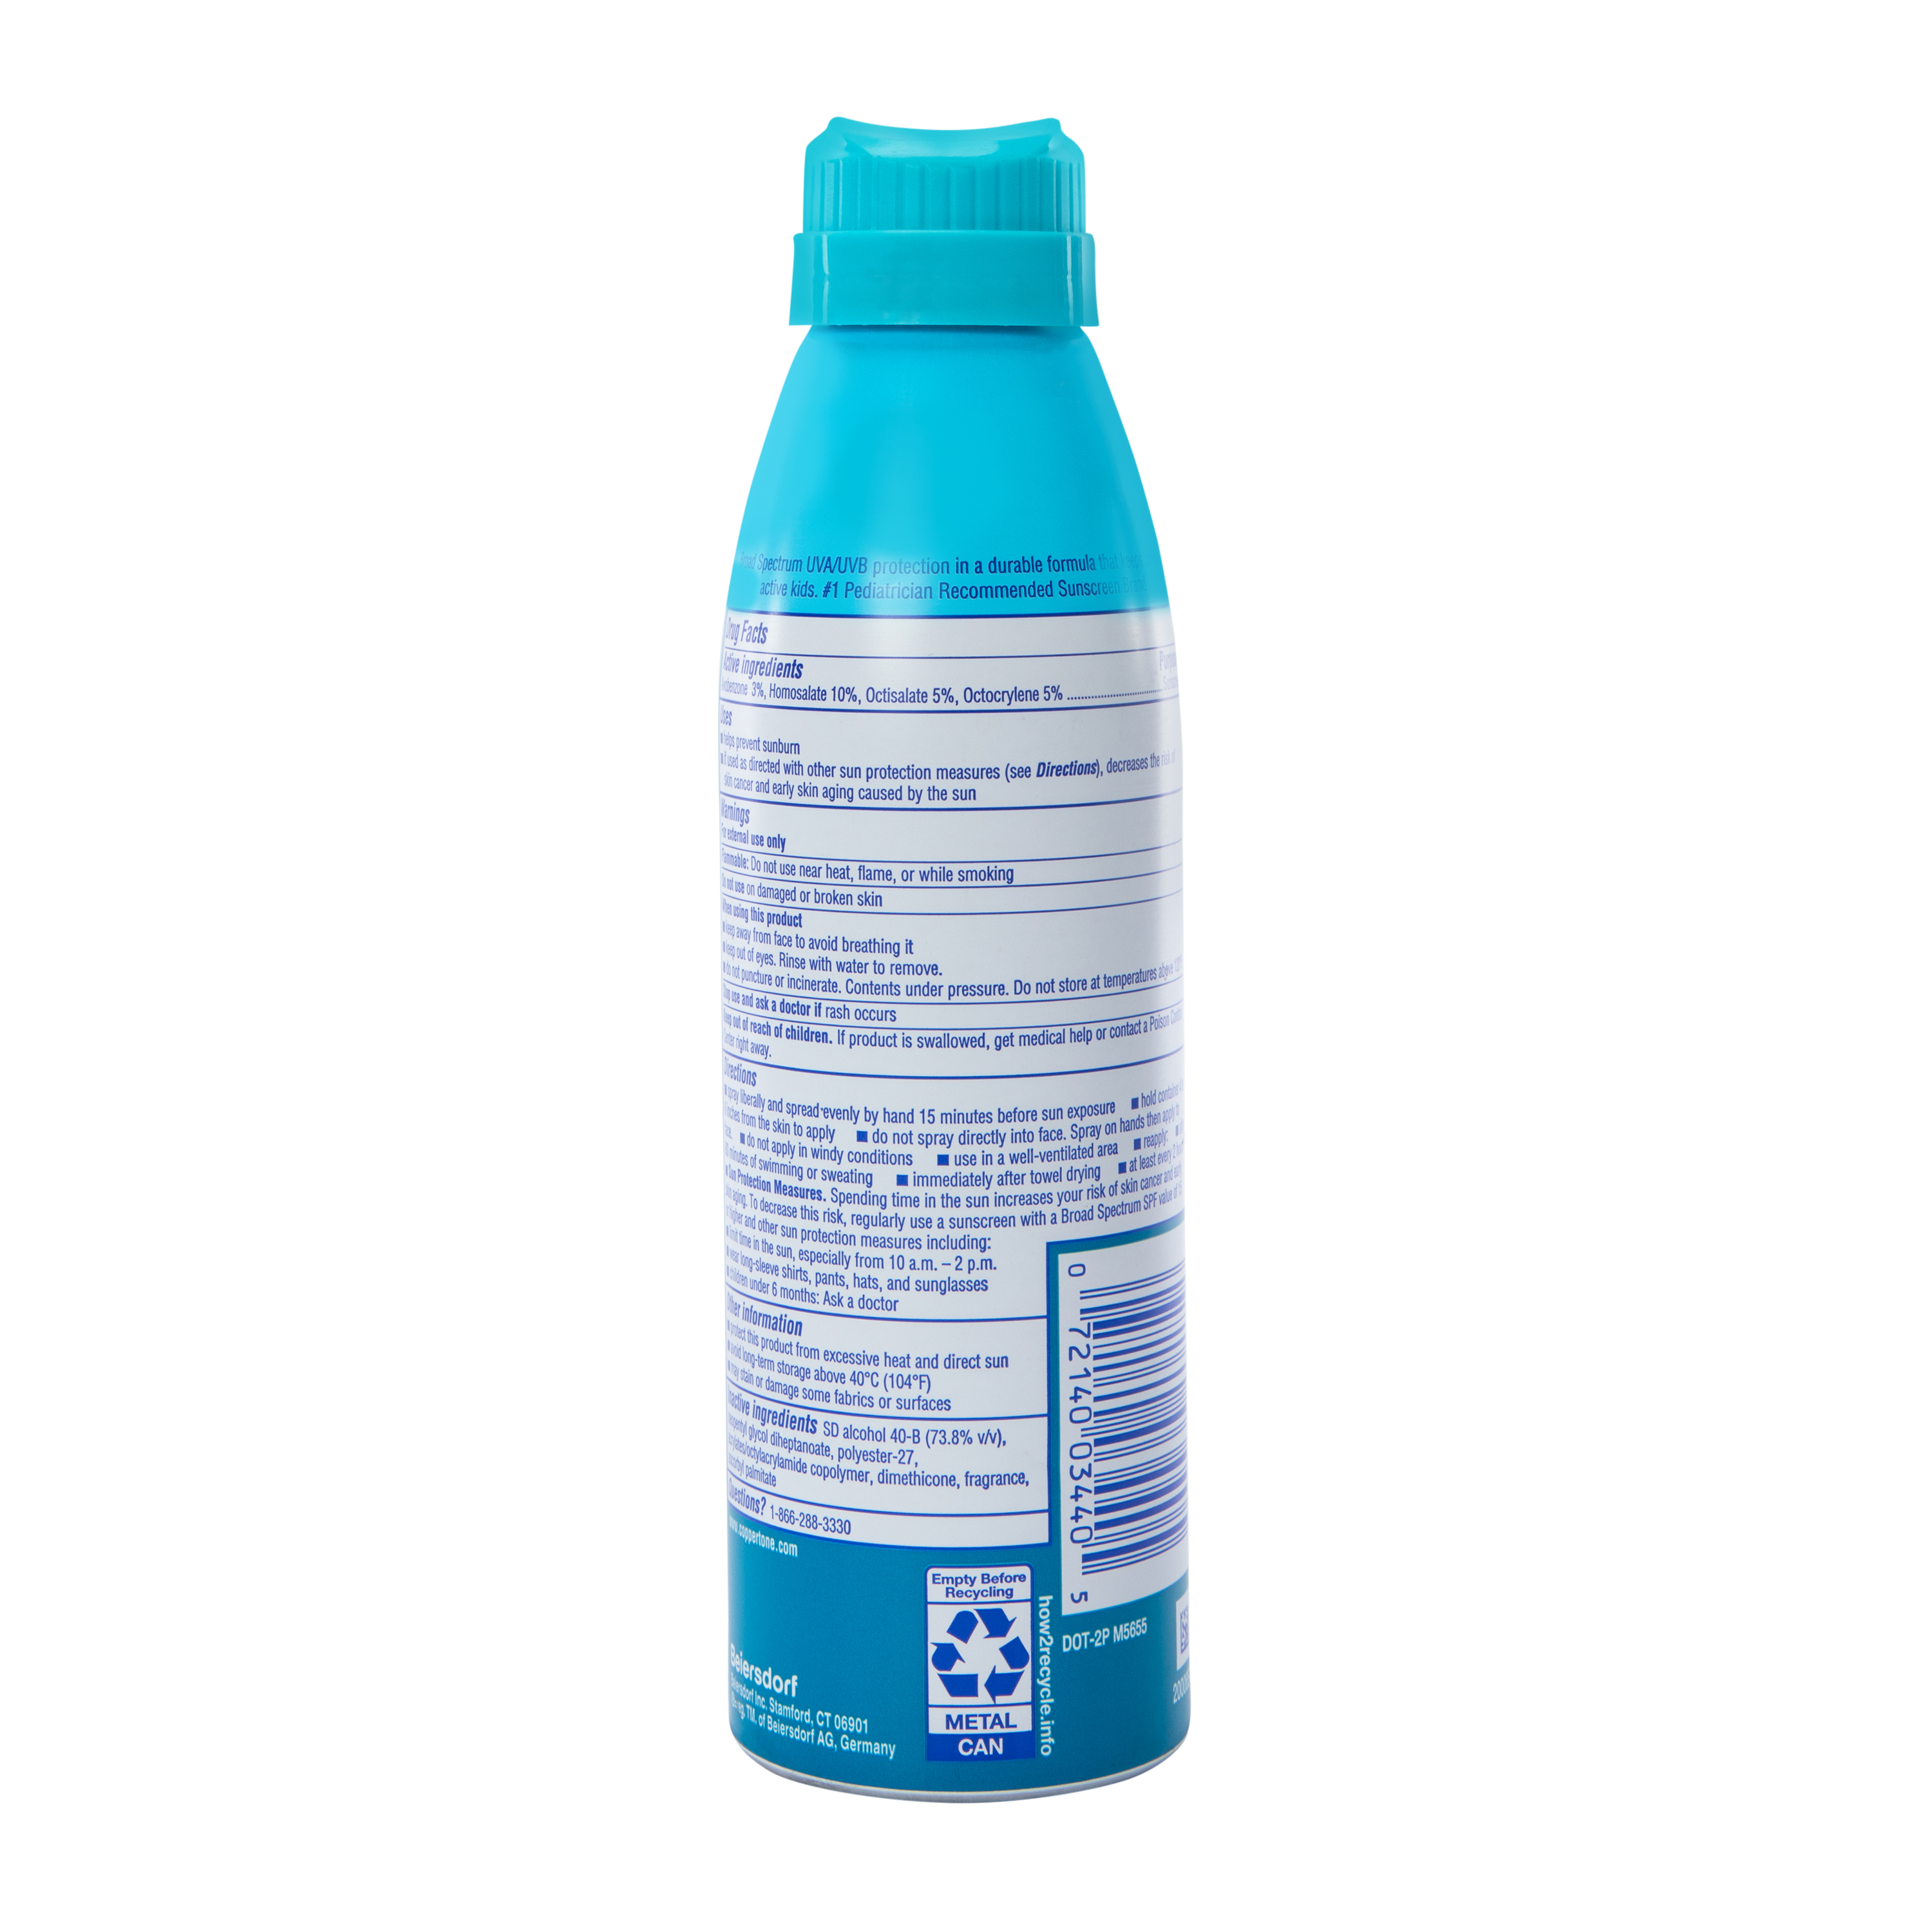 Coppertone® SPF 50 Kid's Sunscreen Spray 5.5oz